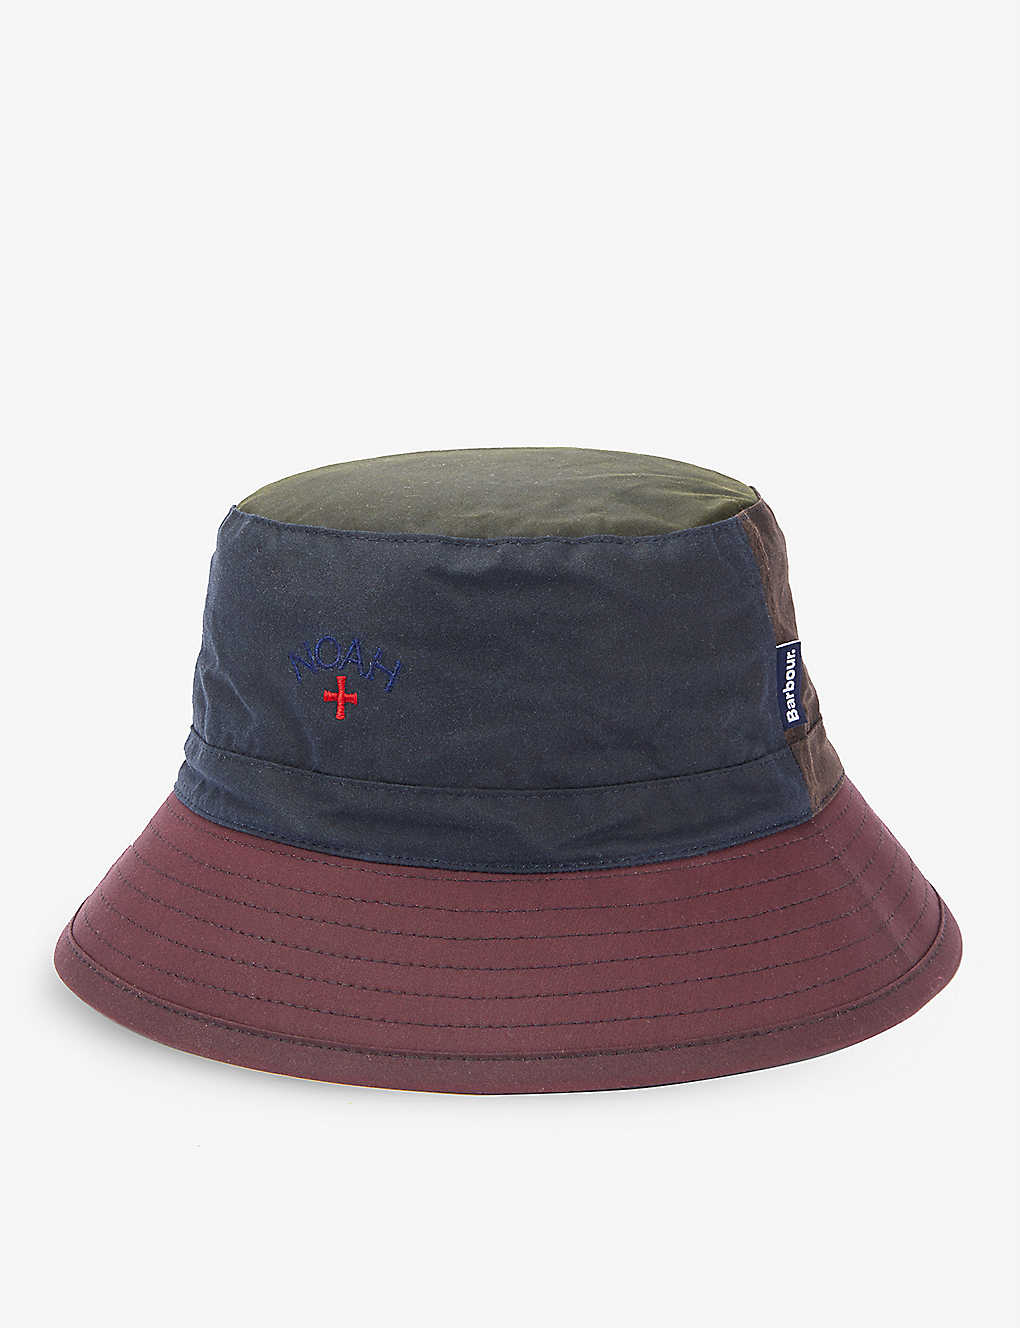 BARBOUR - Barbour x Noah Sports waxed-cotton bucket hat | Selfridges.com